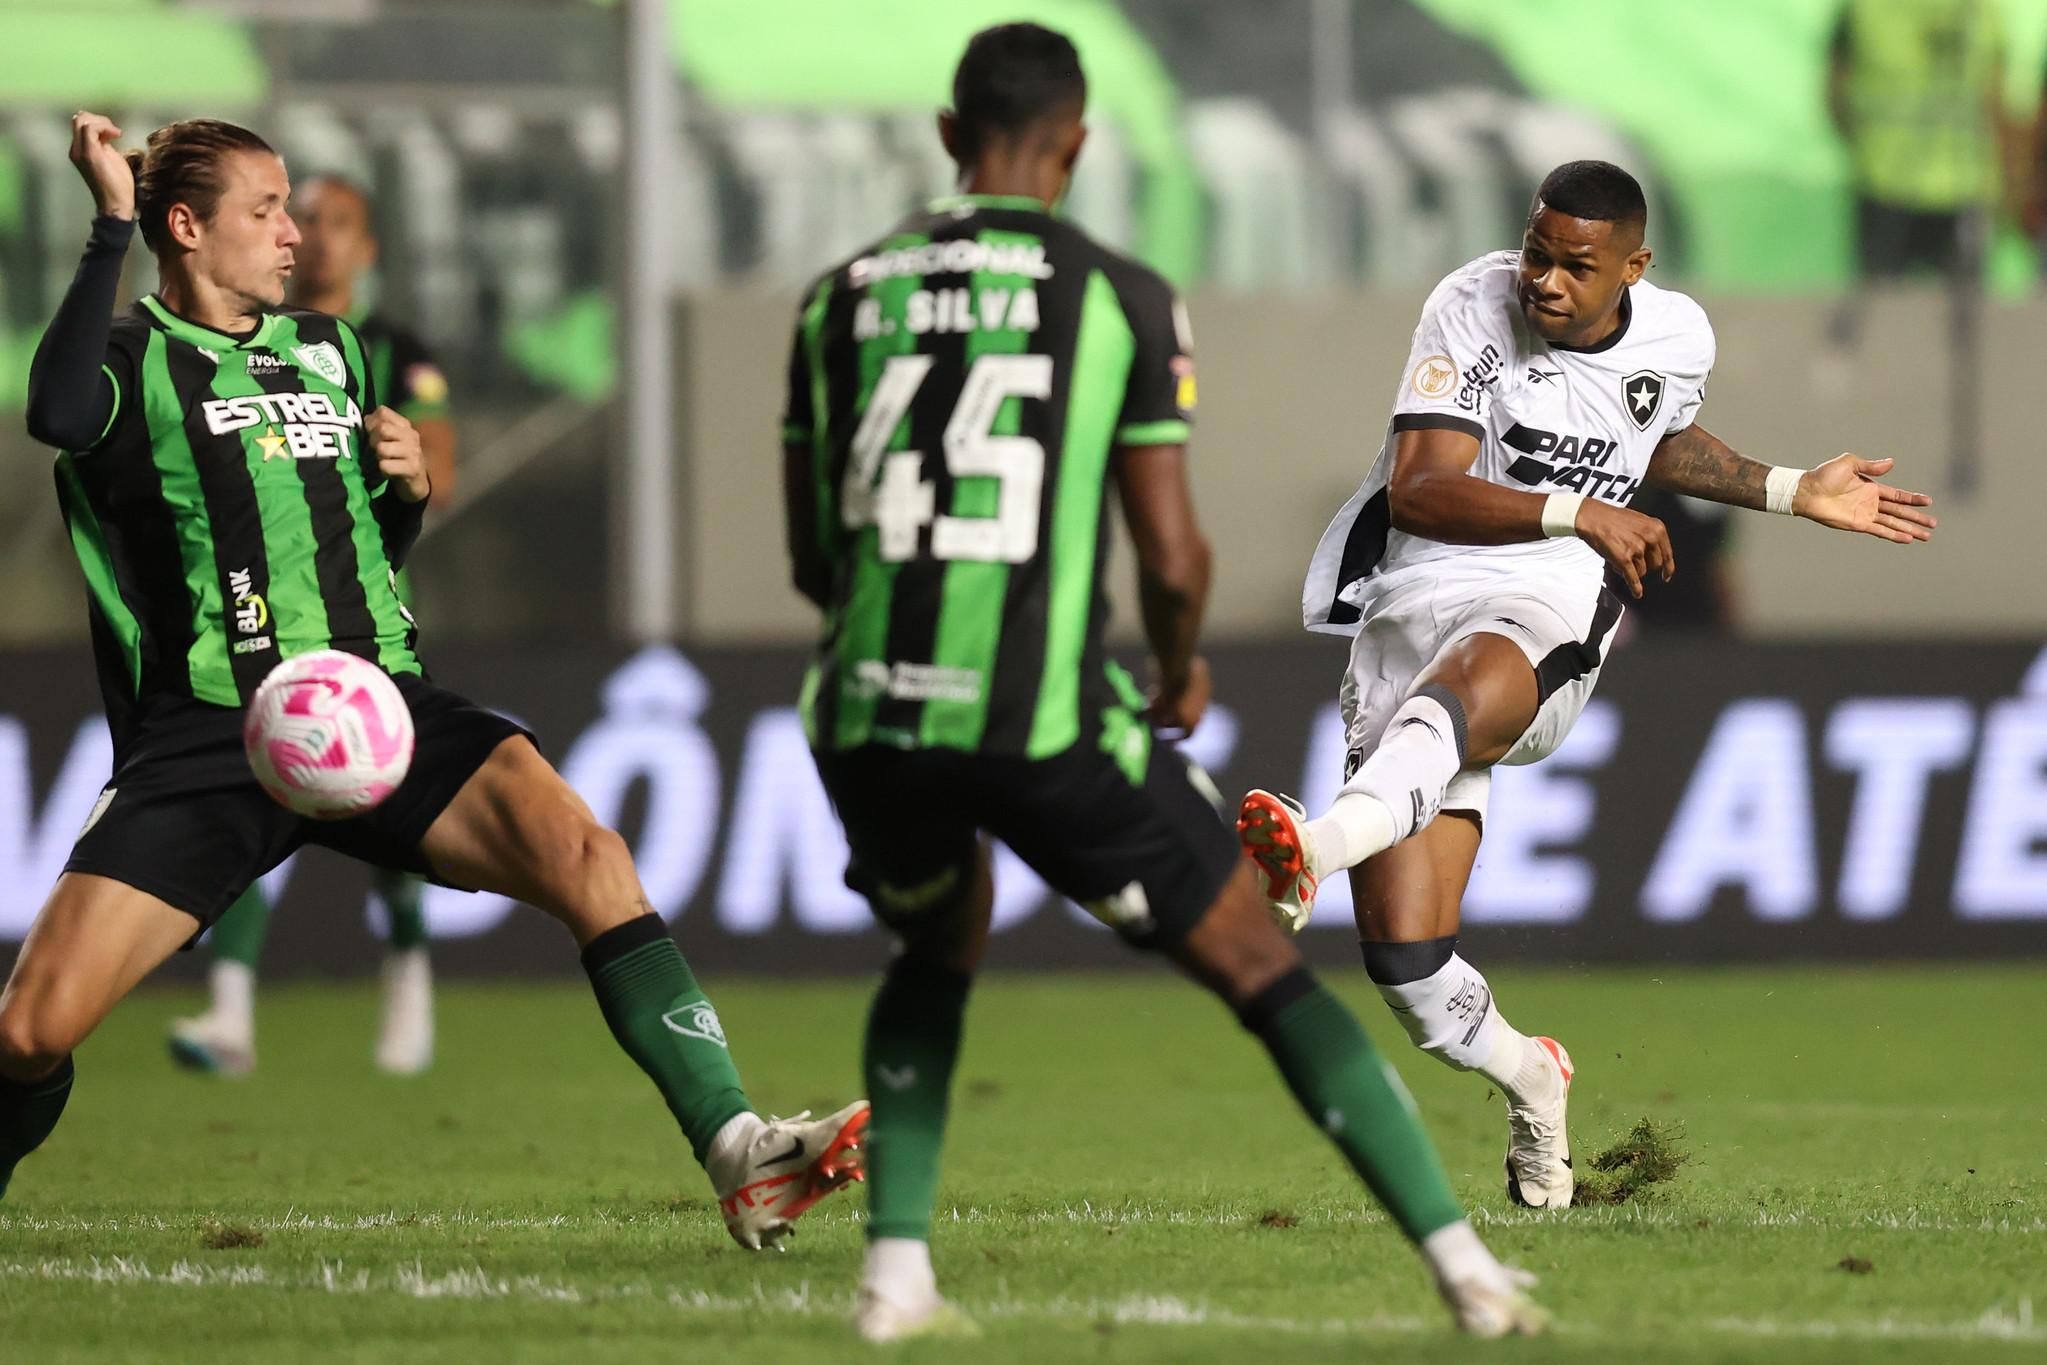 Bahia tenta contratação de zagueiro destaque na base do Botafogo